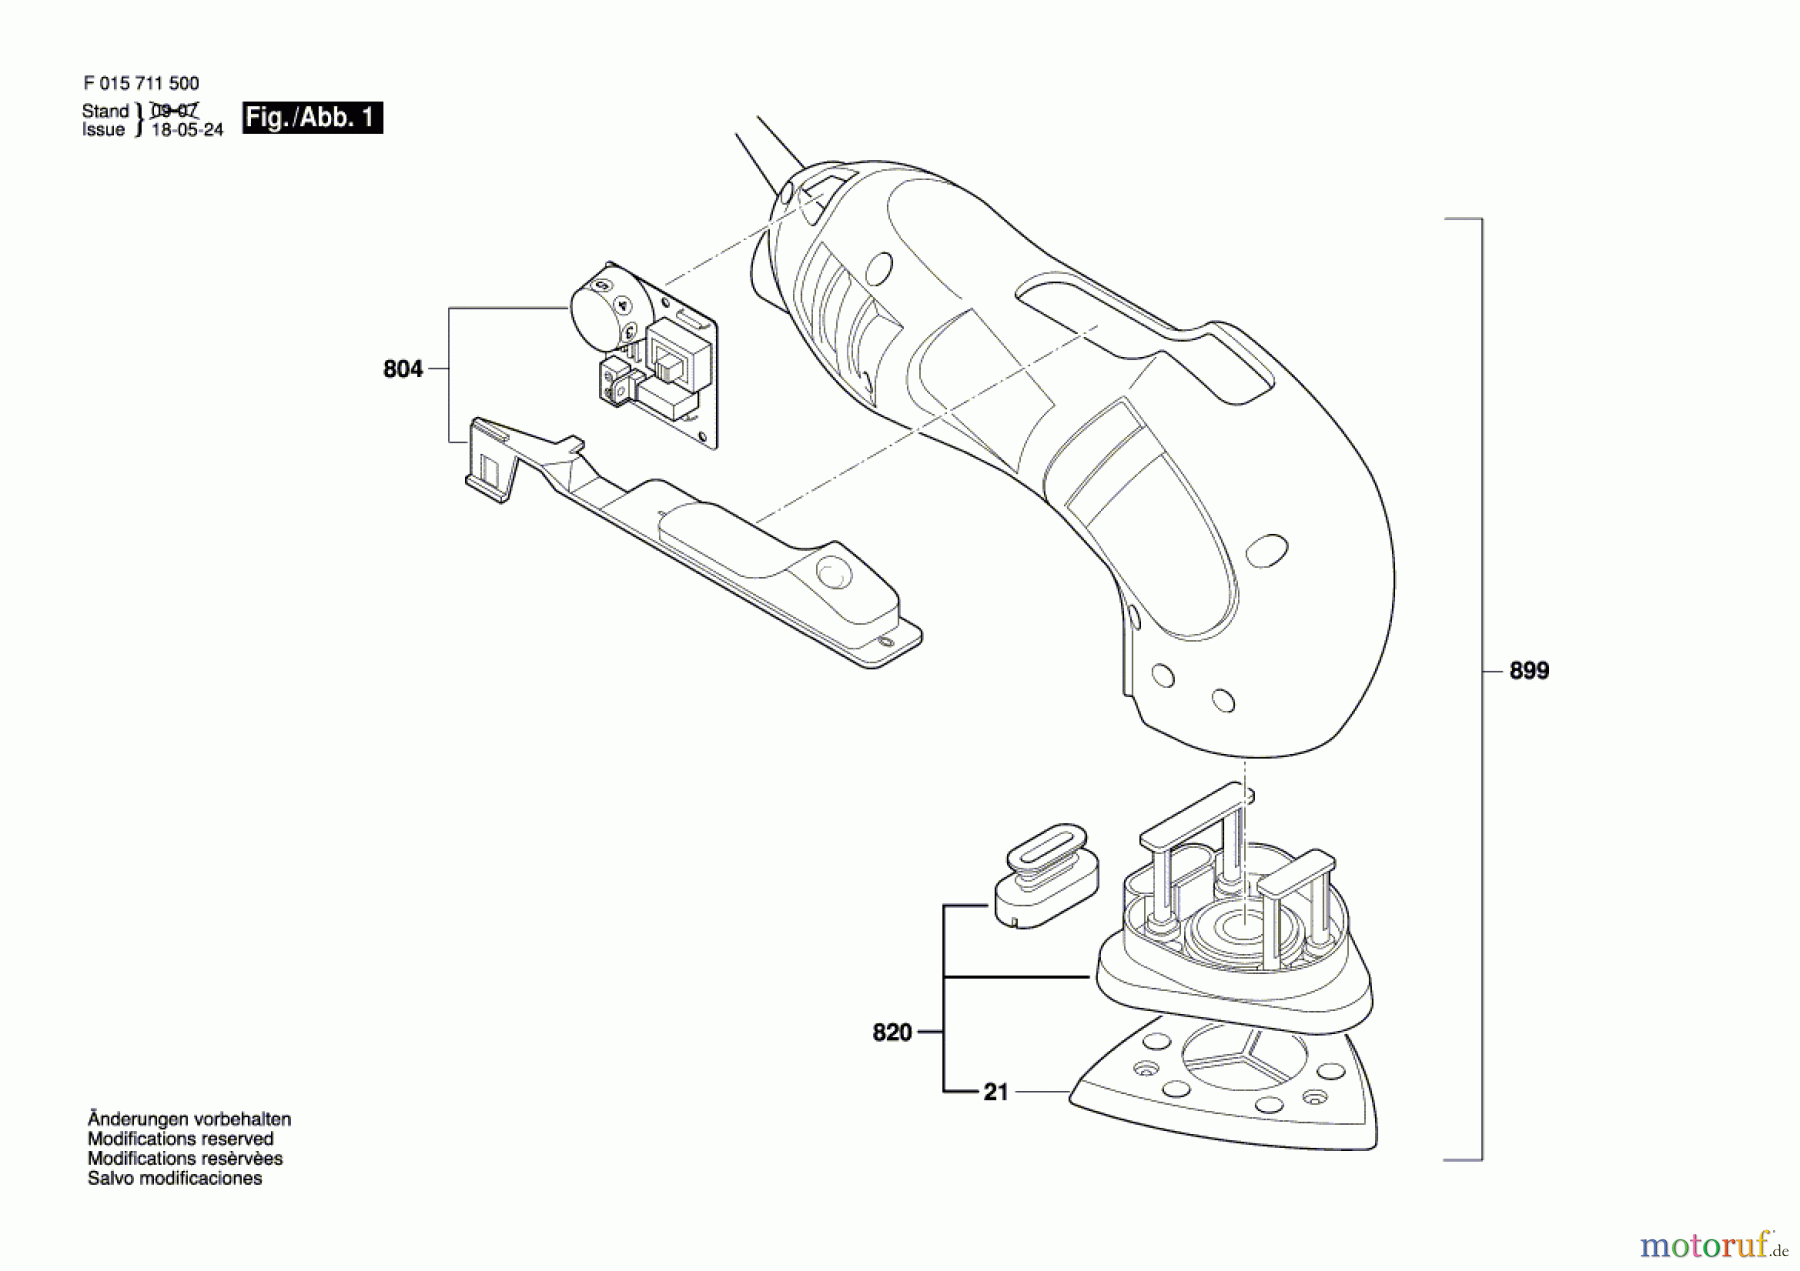  Bosch Werkzeug Hw-Deltaschleifer 7115 Seite 1